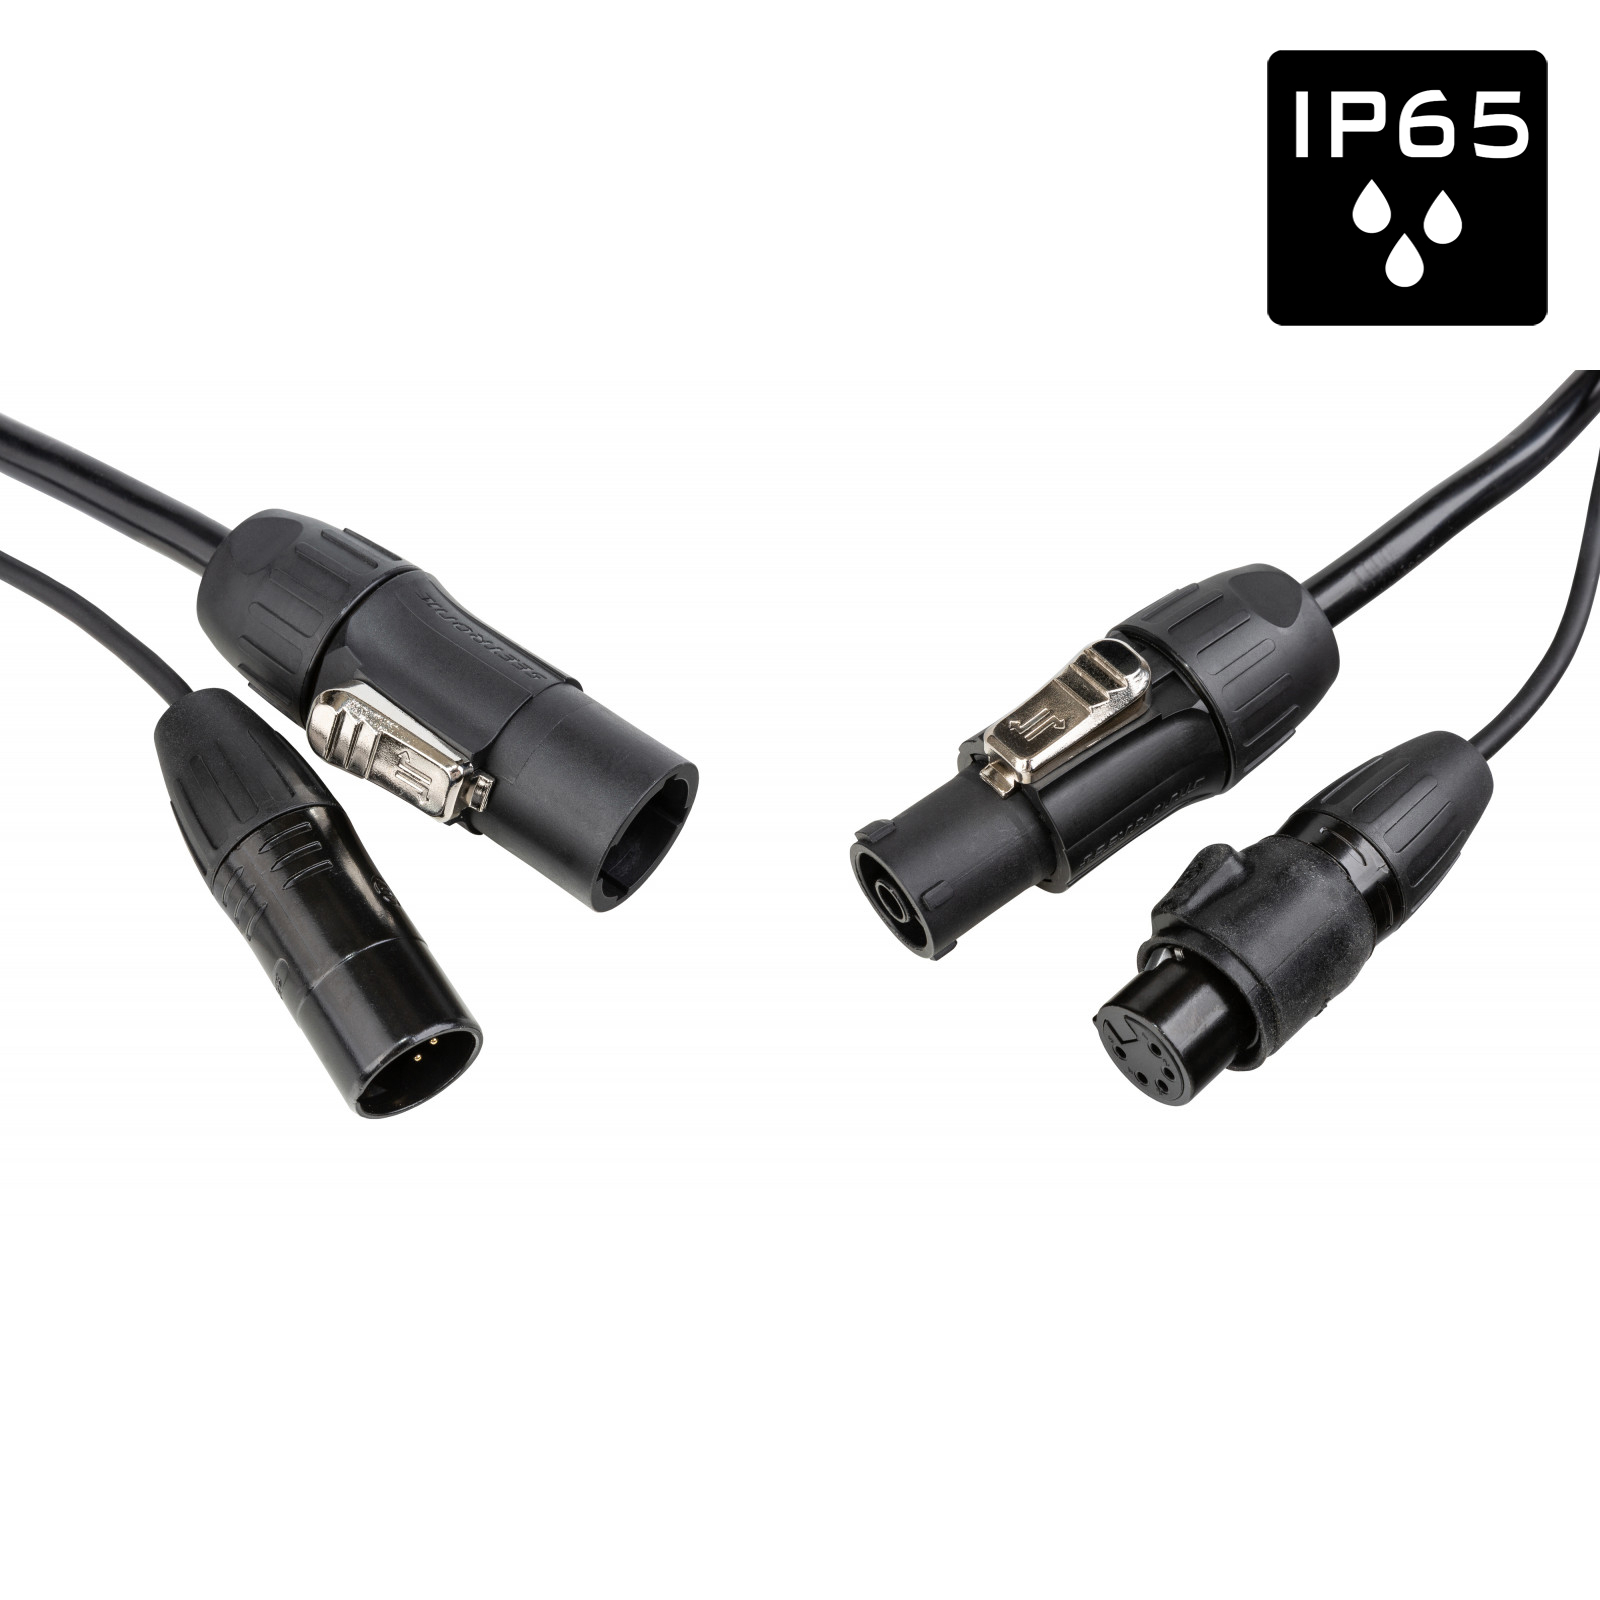 Câble IP65 avec connecteurs Seetronic XLR 5p et compatibles True1 - Longueur 5m